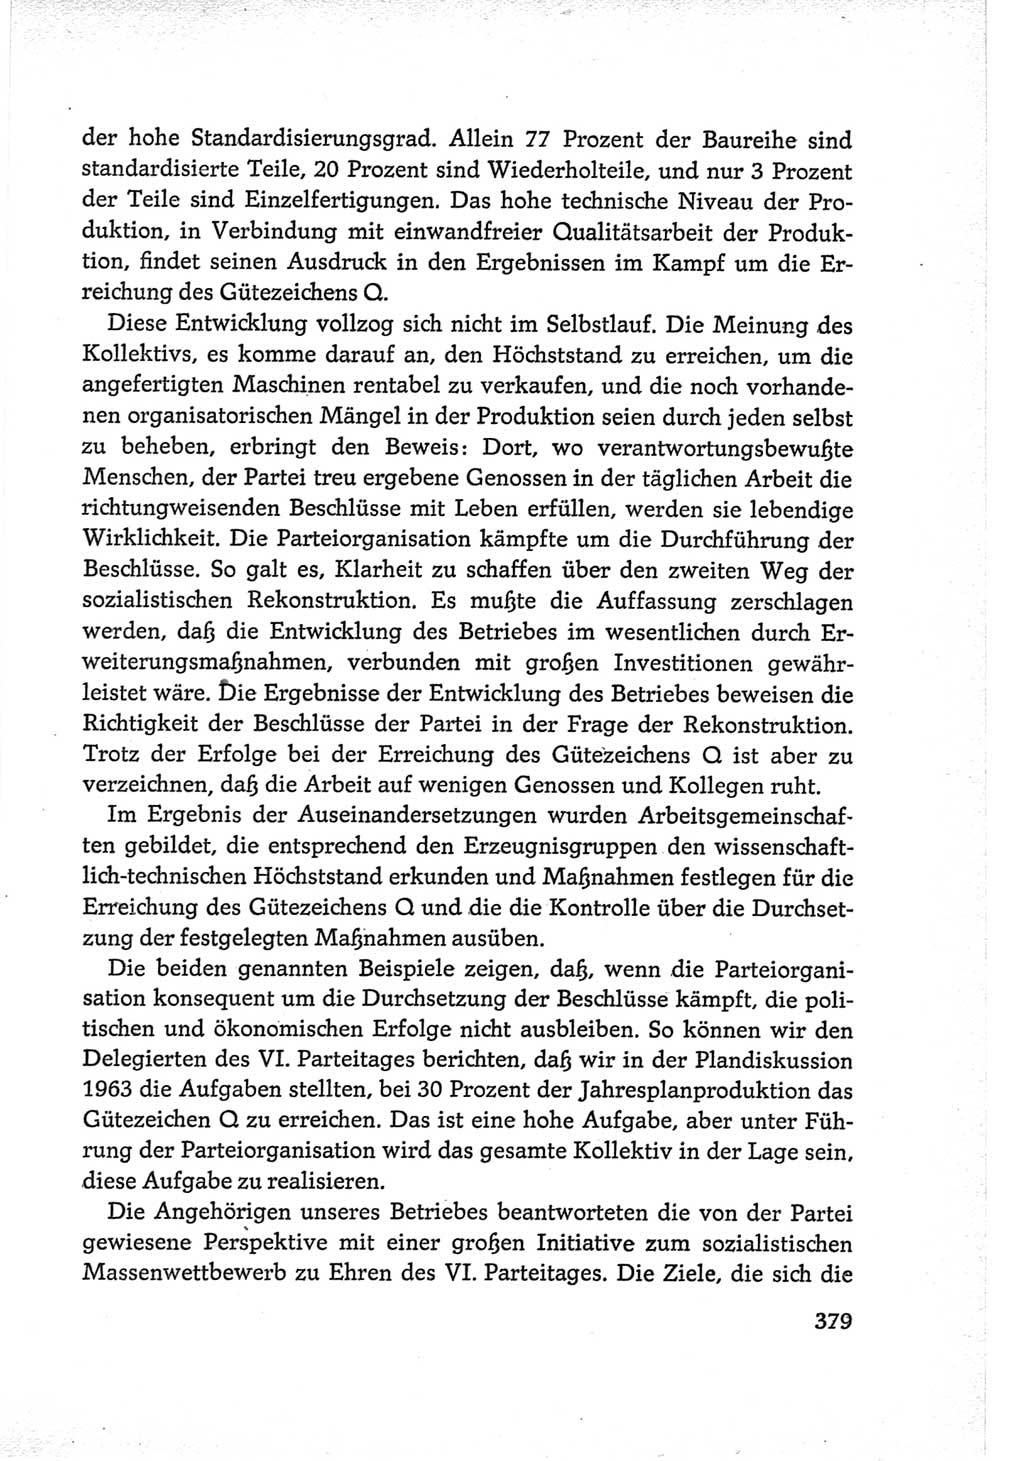 Protokoll der Verhandlungen des Ⅵ. Parteitages der Sozialistischen Einheitspartei Deutschlands (SED) [Deutsche Demokratische Republik (DDR)] 1963, Band Ⅲ, Seite 379 (Prot. Verh. Ⅵ. PT SED DDR 1963, Bd. Ⅲ, S. 379)